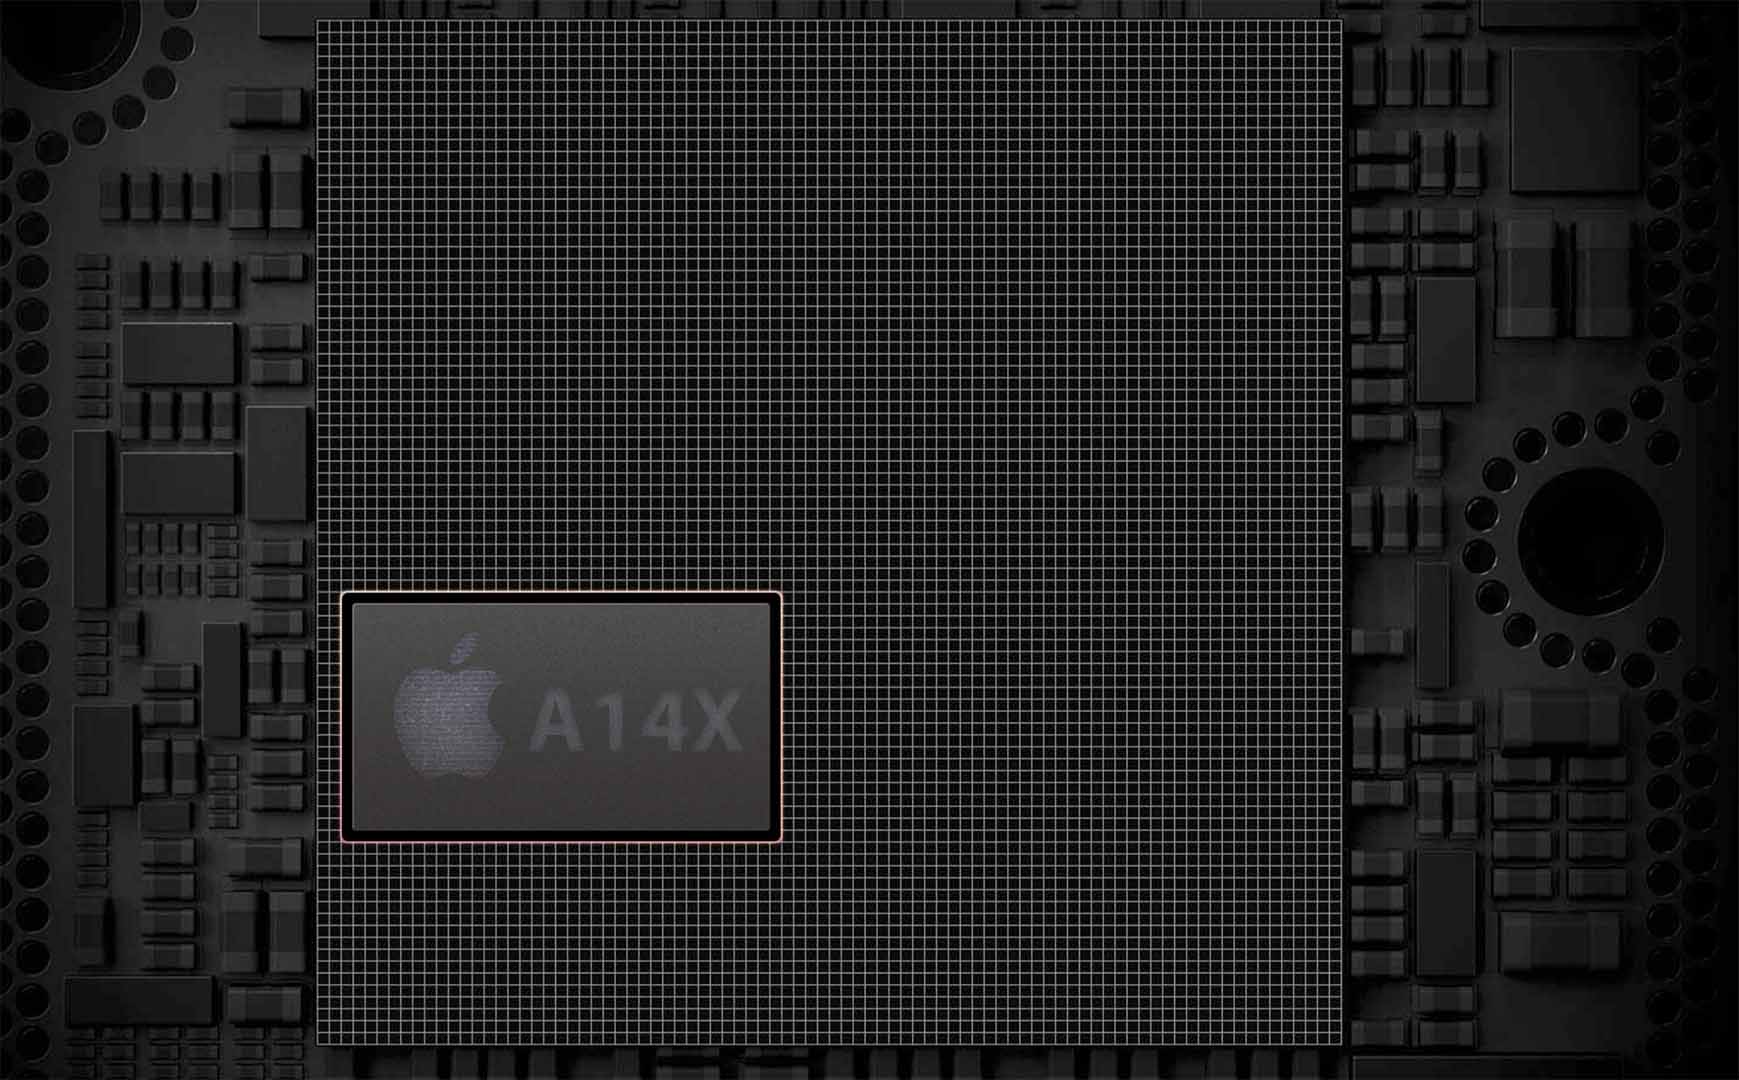 پردازنده  A14X Bionic اپل عملکرد بسیار بالایی دارد